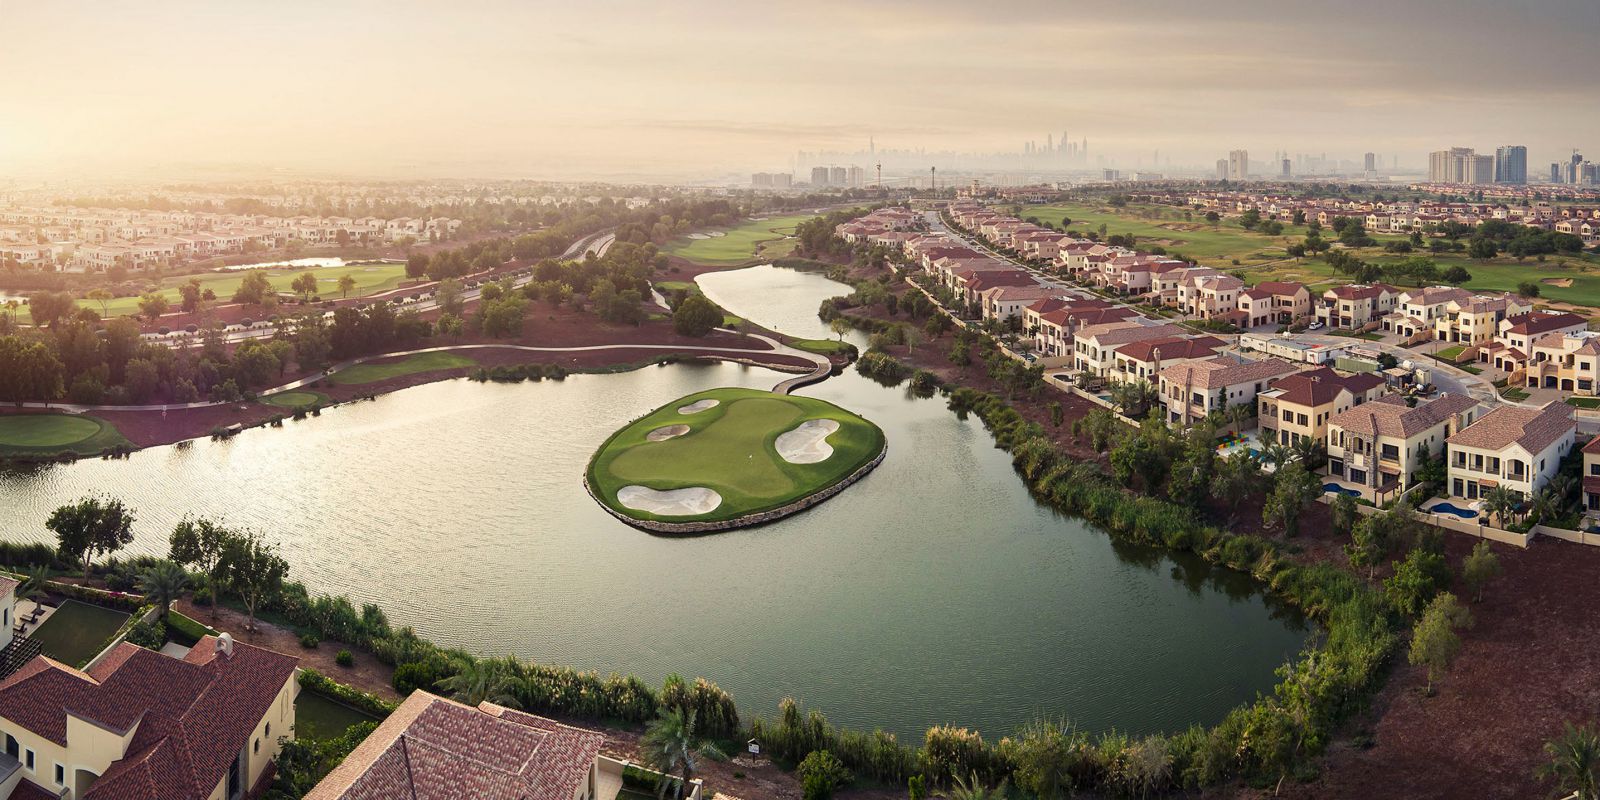 Jumeirah Golf Estates Wins International Property Award for Best International Development Marketing